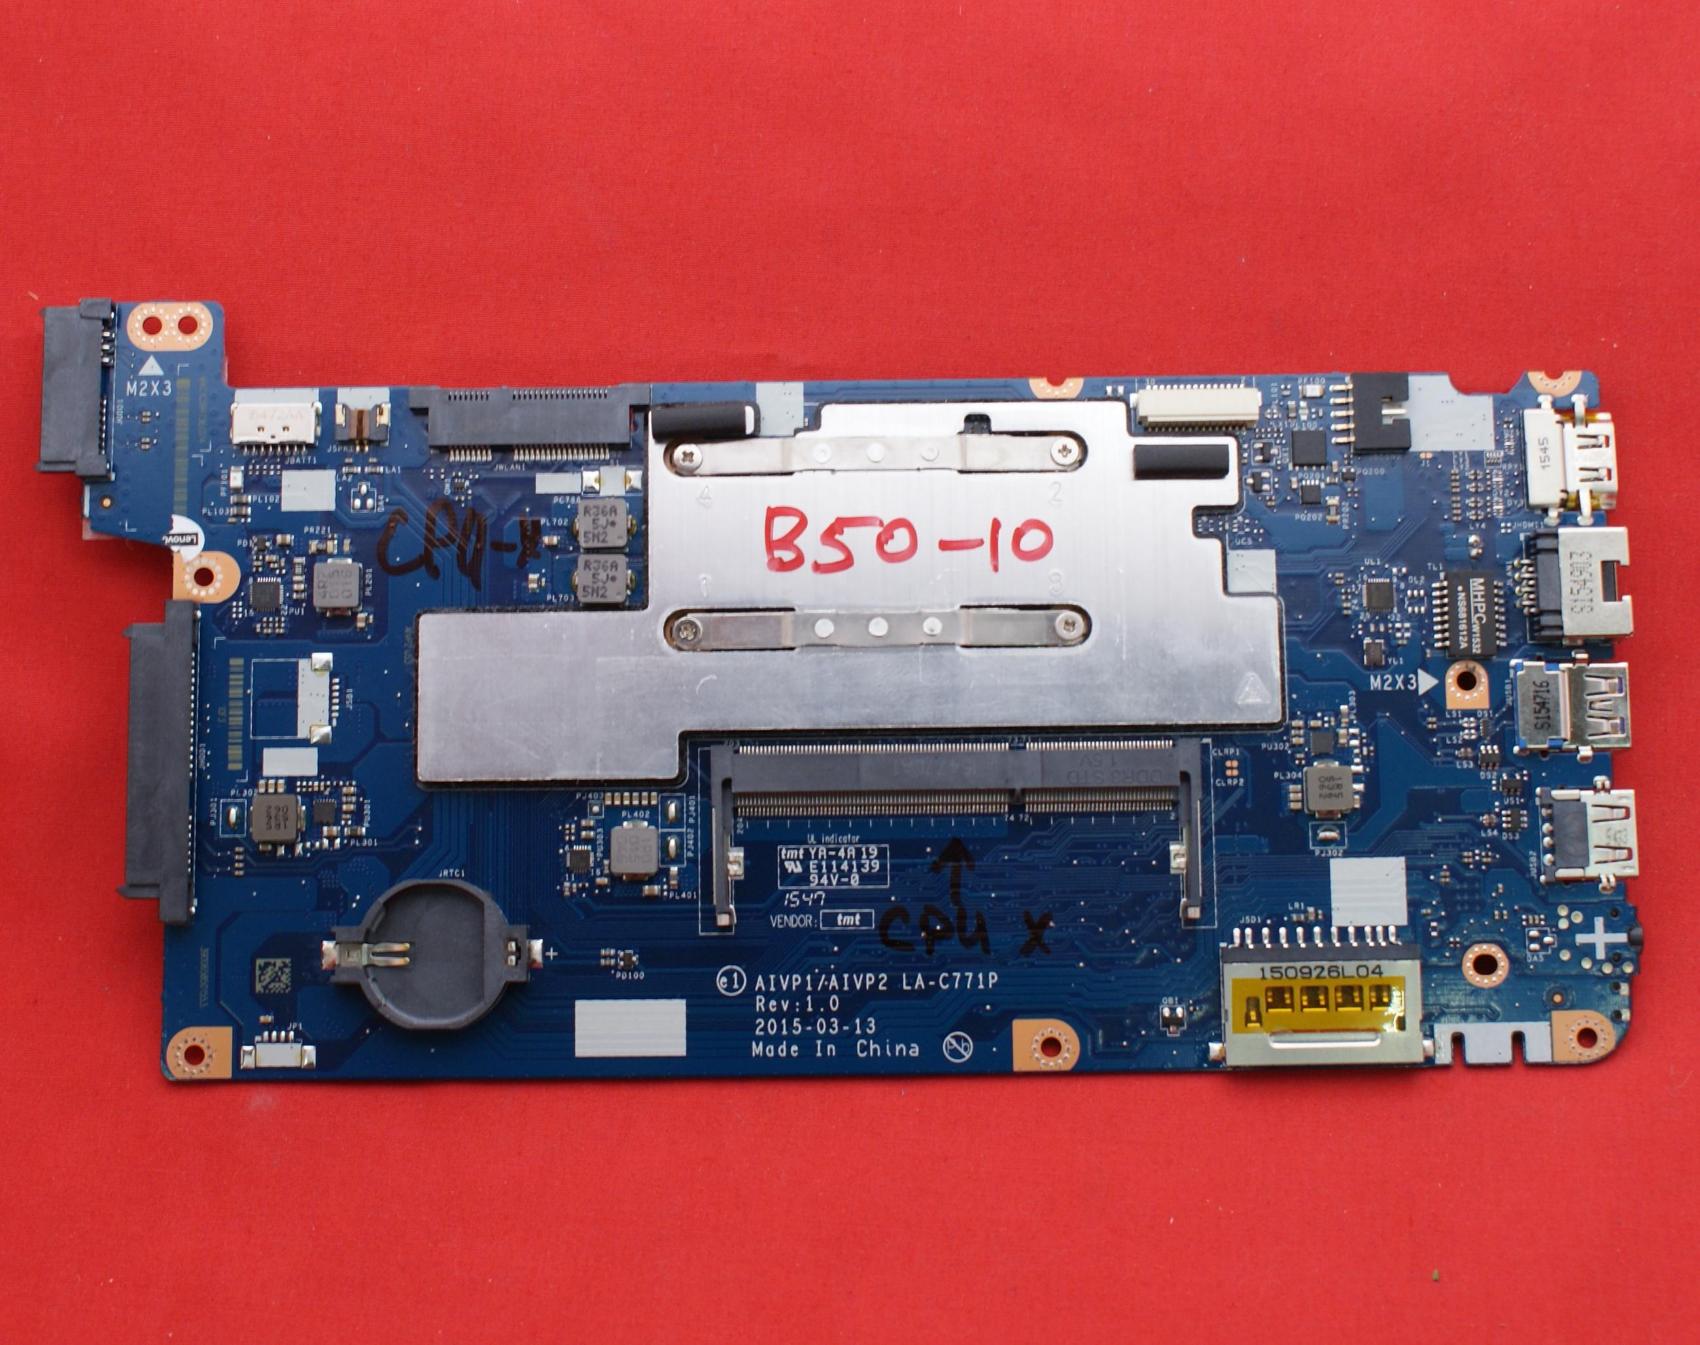 Материнская плата для ноутбука Lenovo IdeaPad 100-15IBY, B50-10(не рабочая)